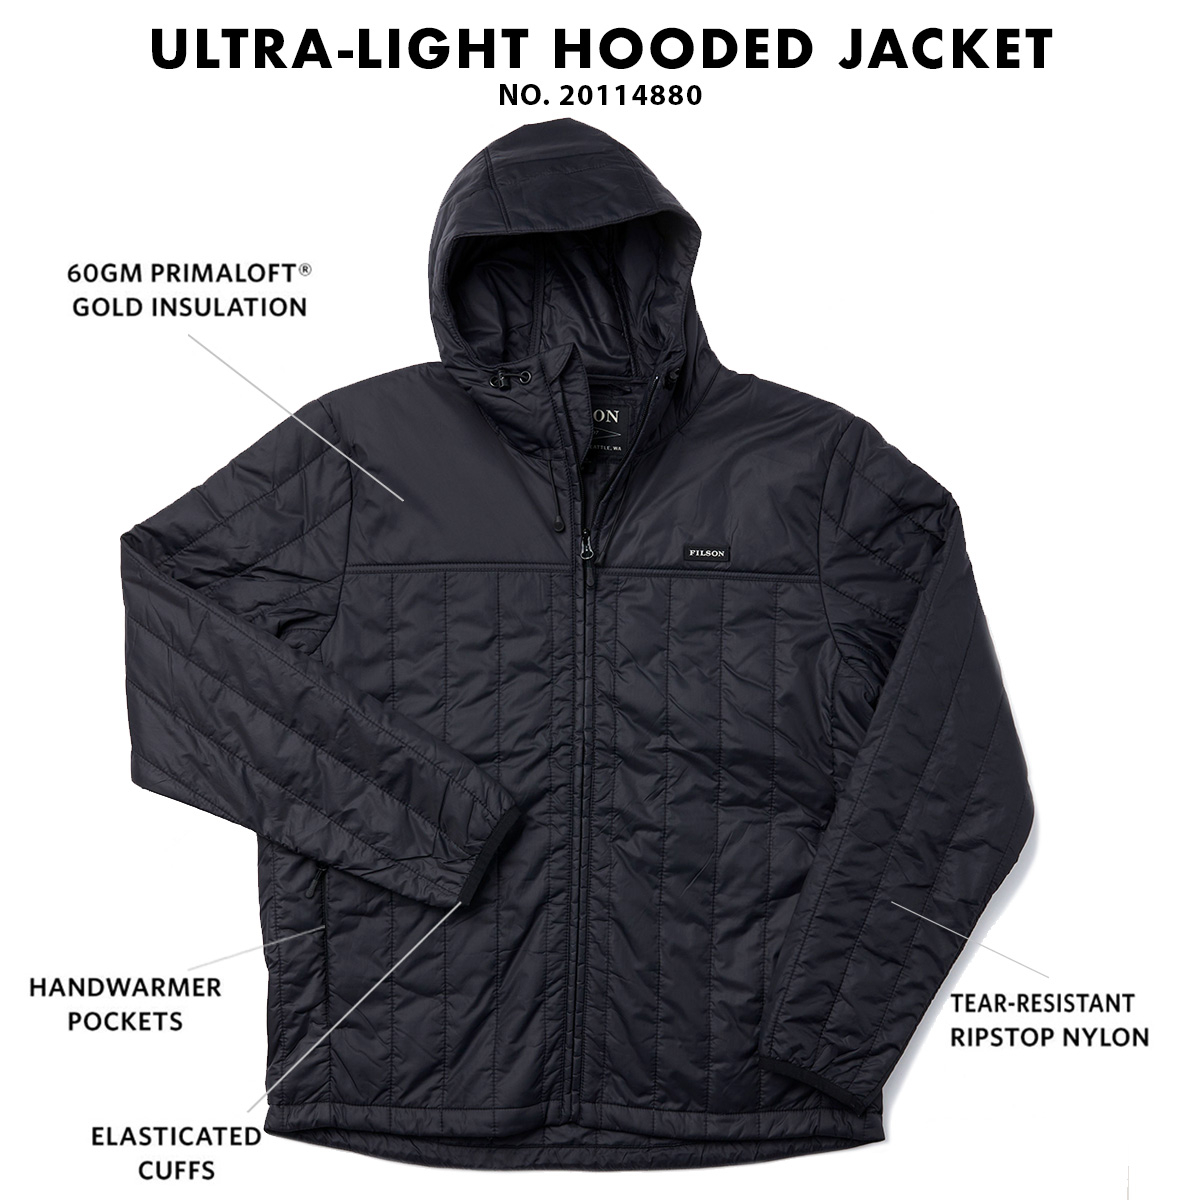 Filson Ultralight Hooded Jacket Black, winddicht, warm, ademend en comprimeerbaar, ook als het nat wordt